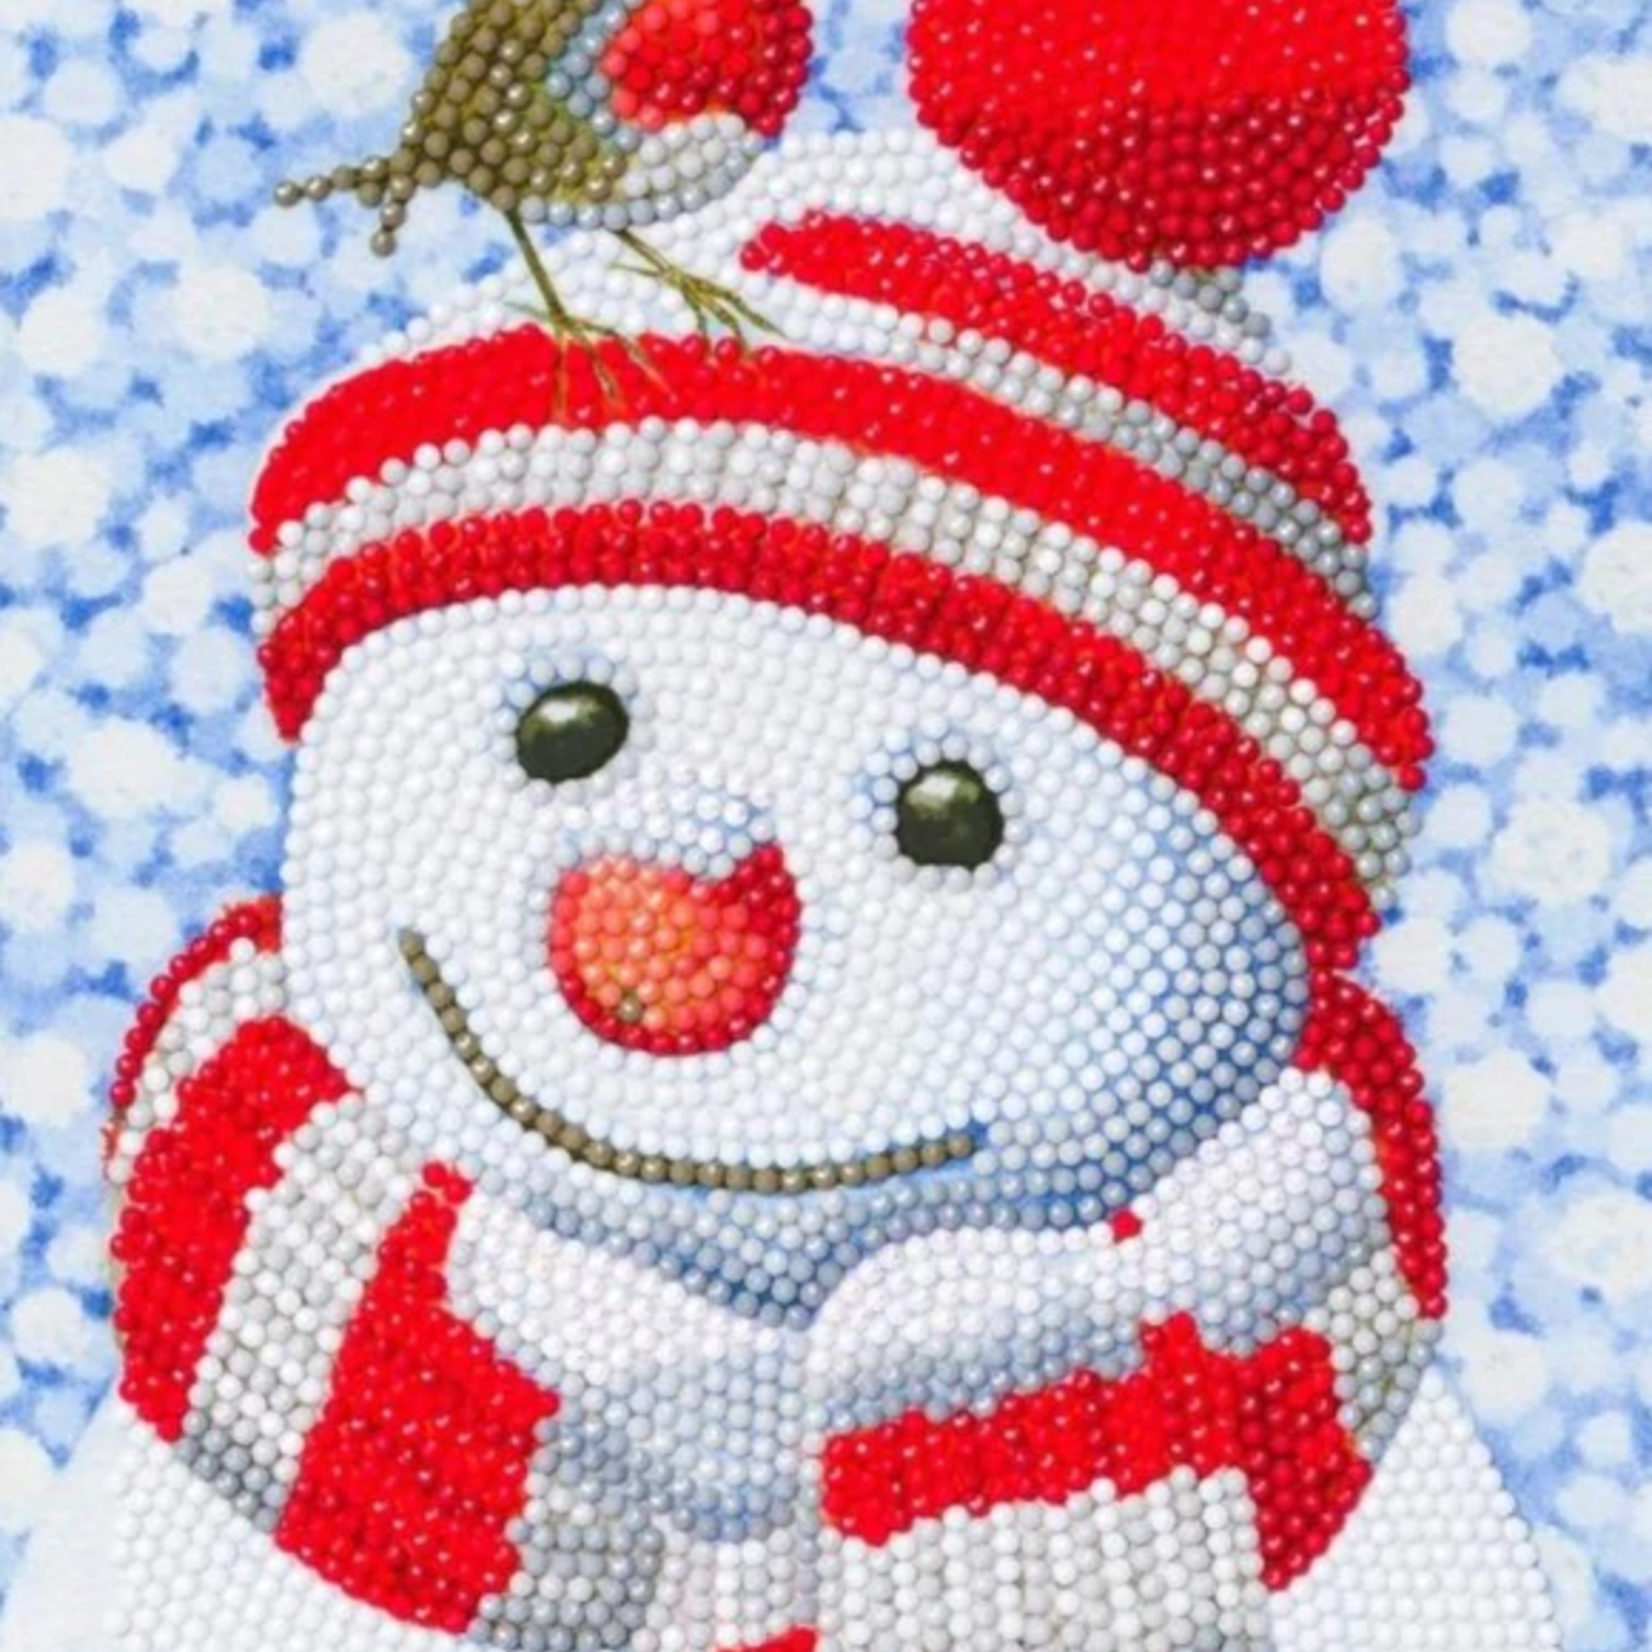 Craft Buddy Crystal Art - Carnet : Friendly Snowman